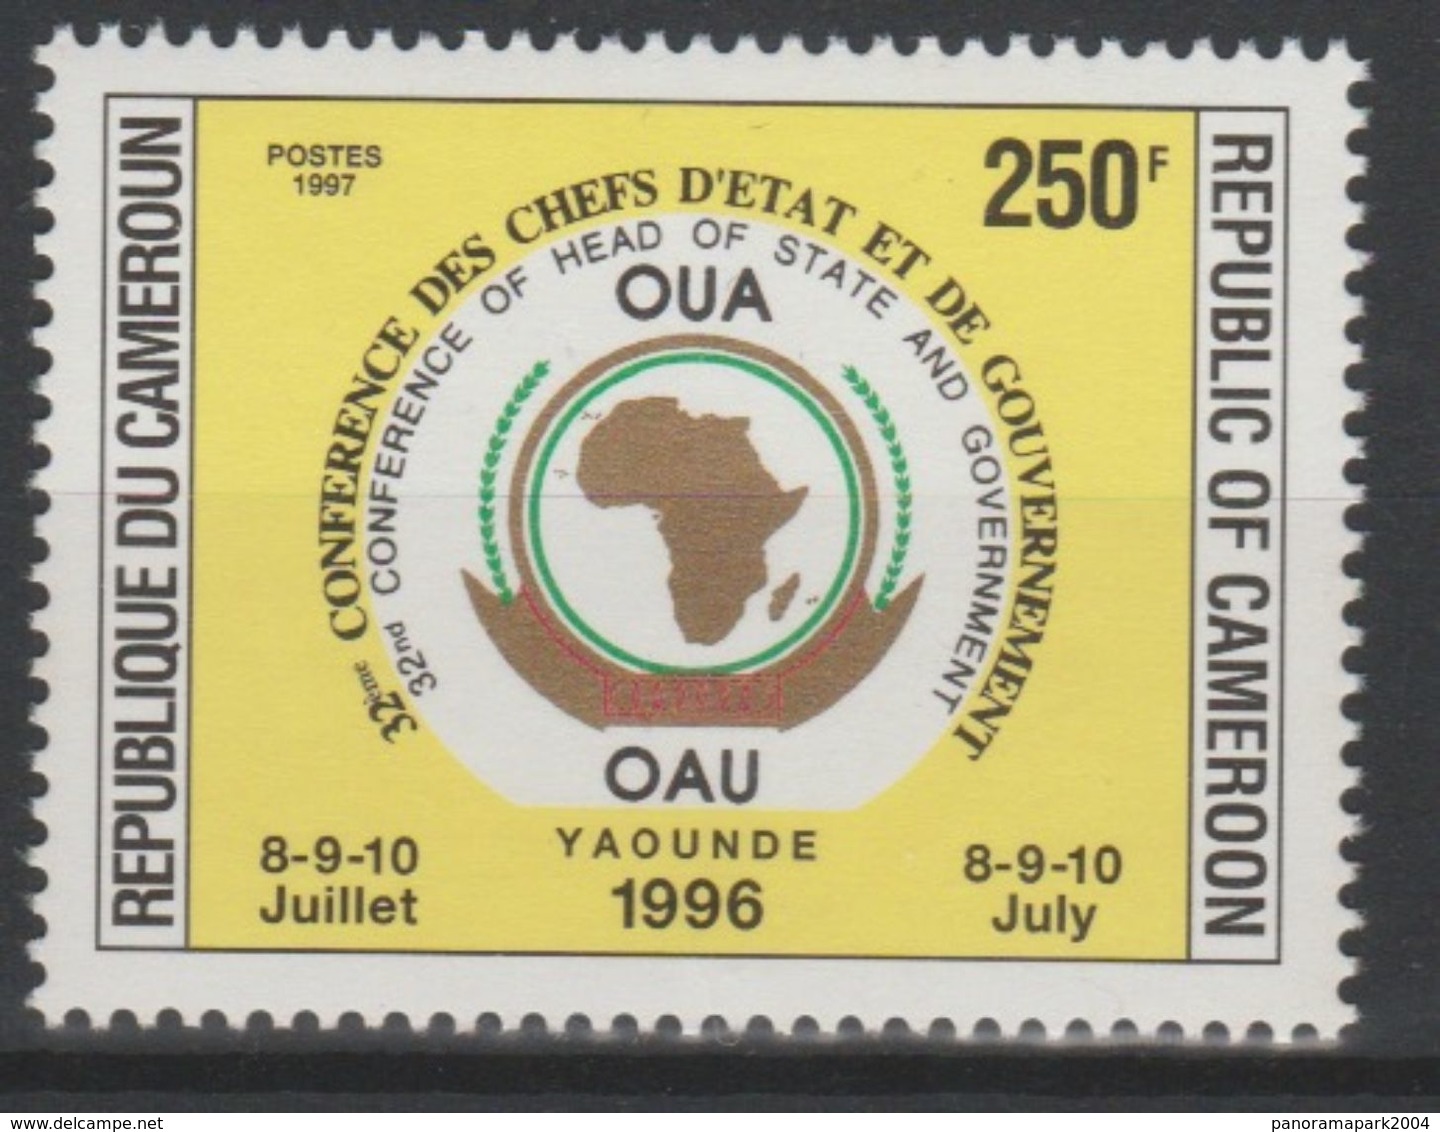 Cameroun Cameroon Kamerun 1997 250F Mi. 1223 OAU OUA Map Landkarte Carte Conférence Chefs D'Etat 8-9-10 Juillet - Cameroun (1960-...)